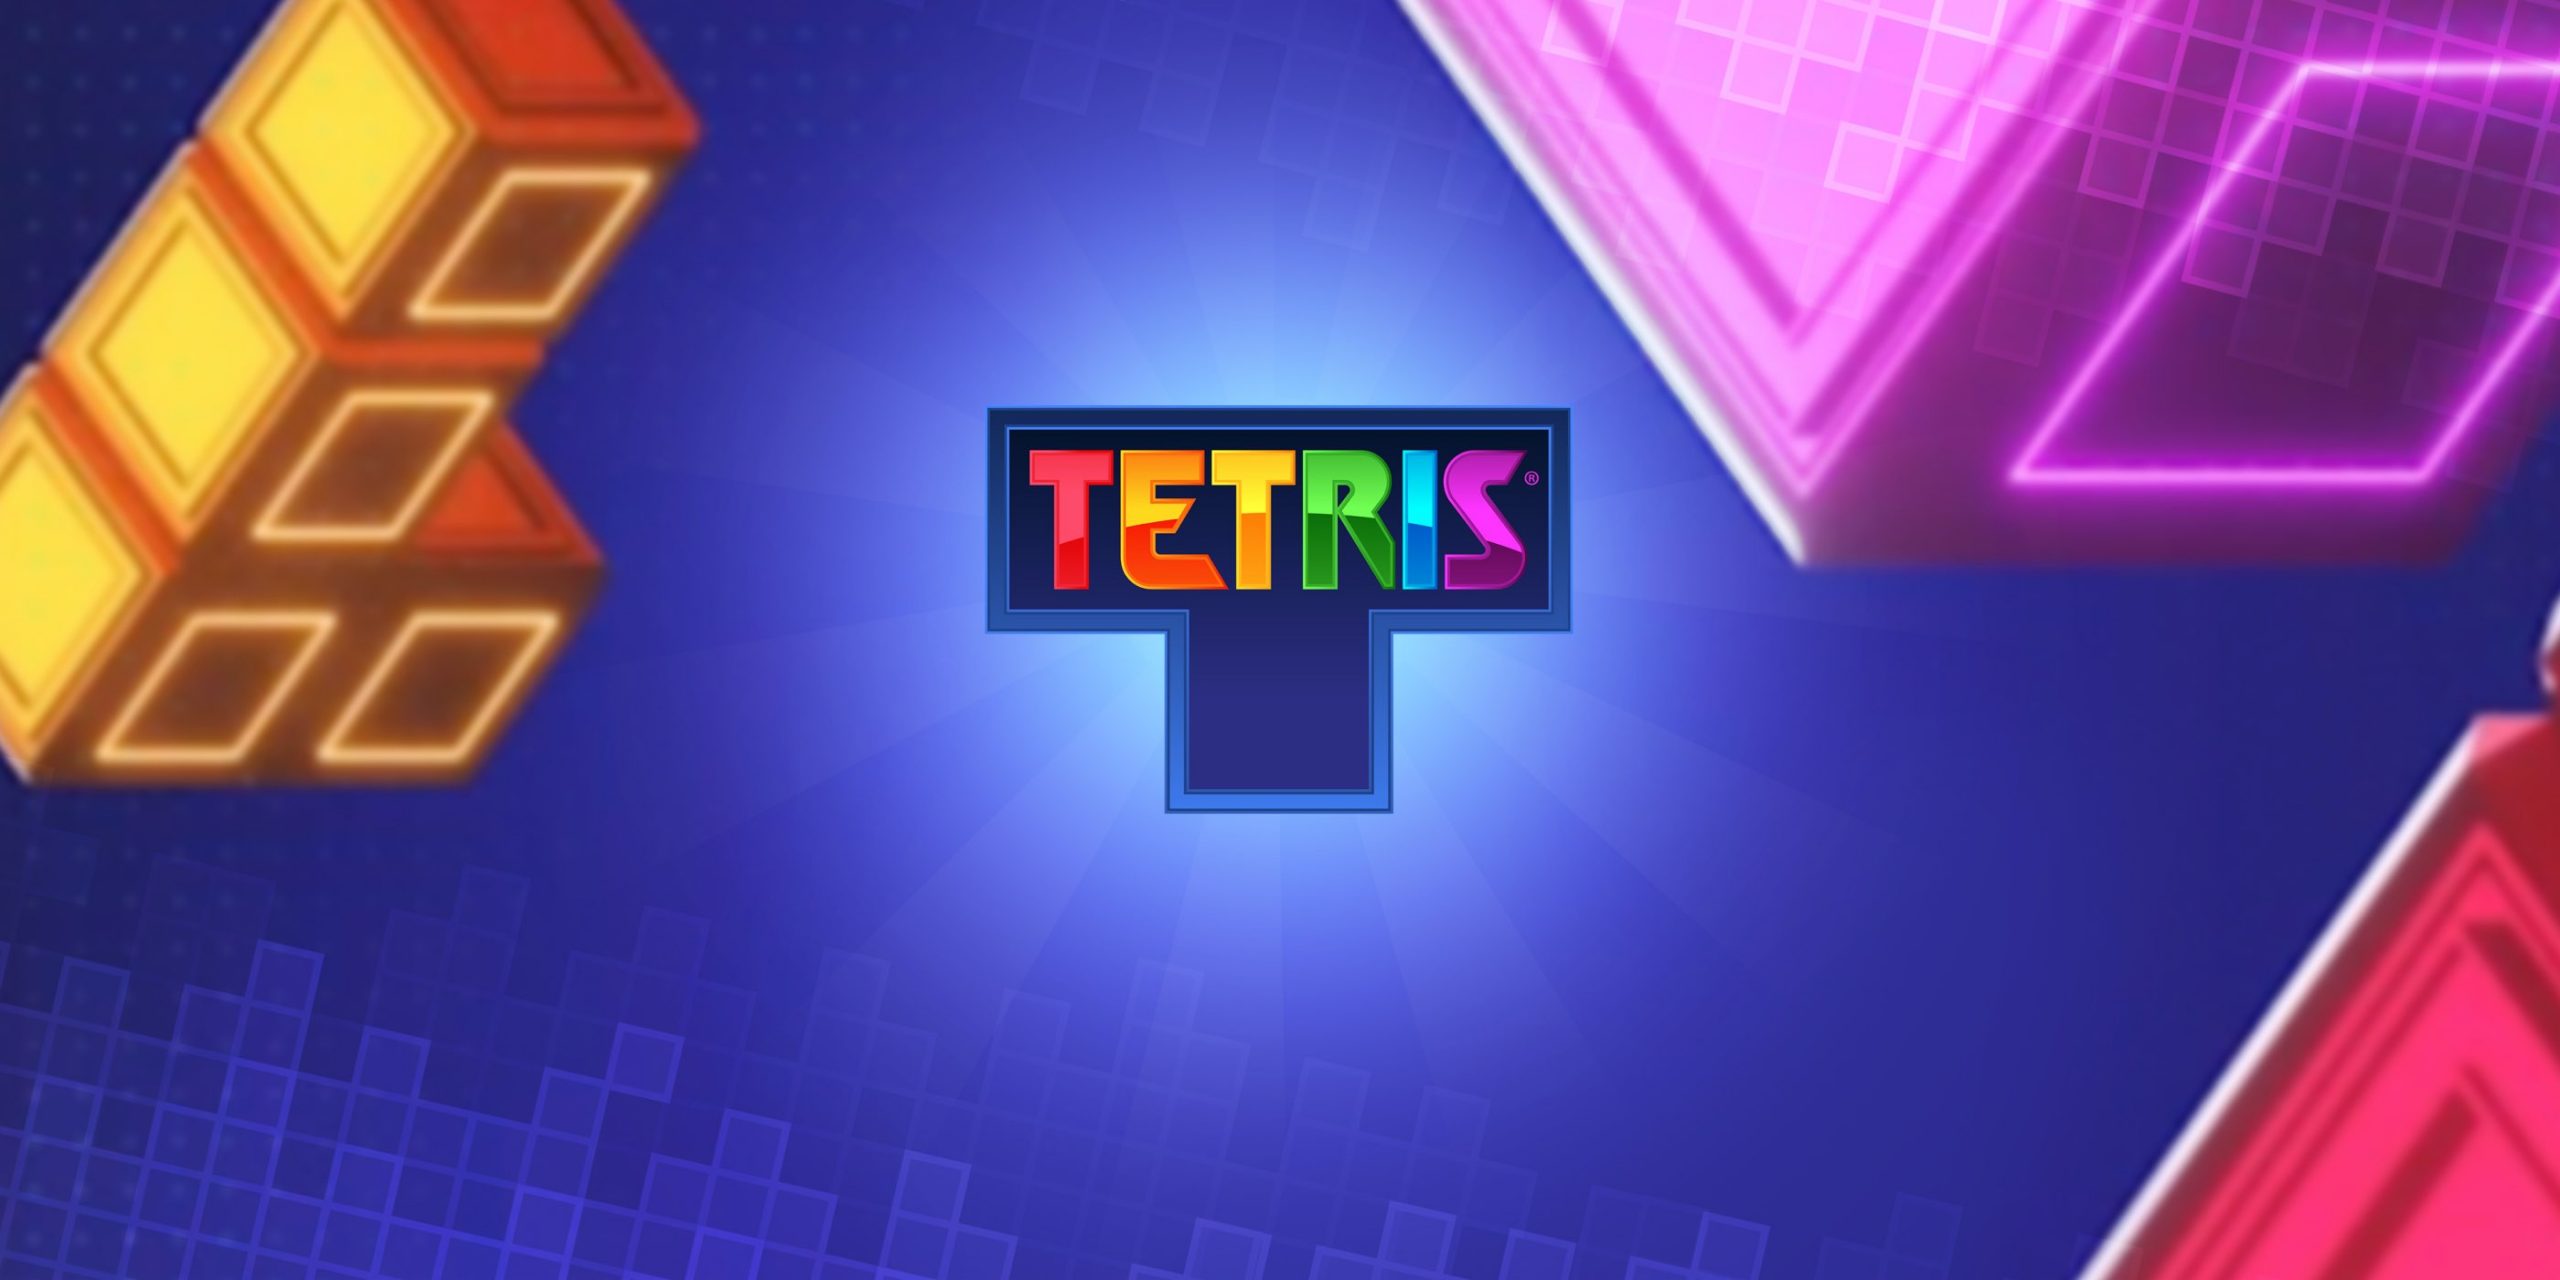 «Tetris»: Η άγνωστη ιστορία του διασημότερου ηλεκτρονικού παιχνιδιού των 80s